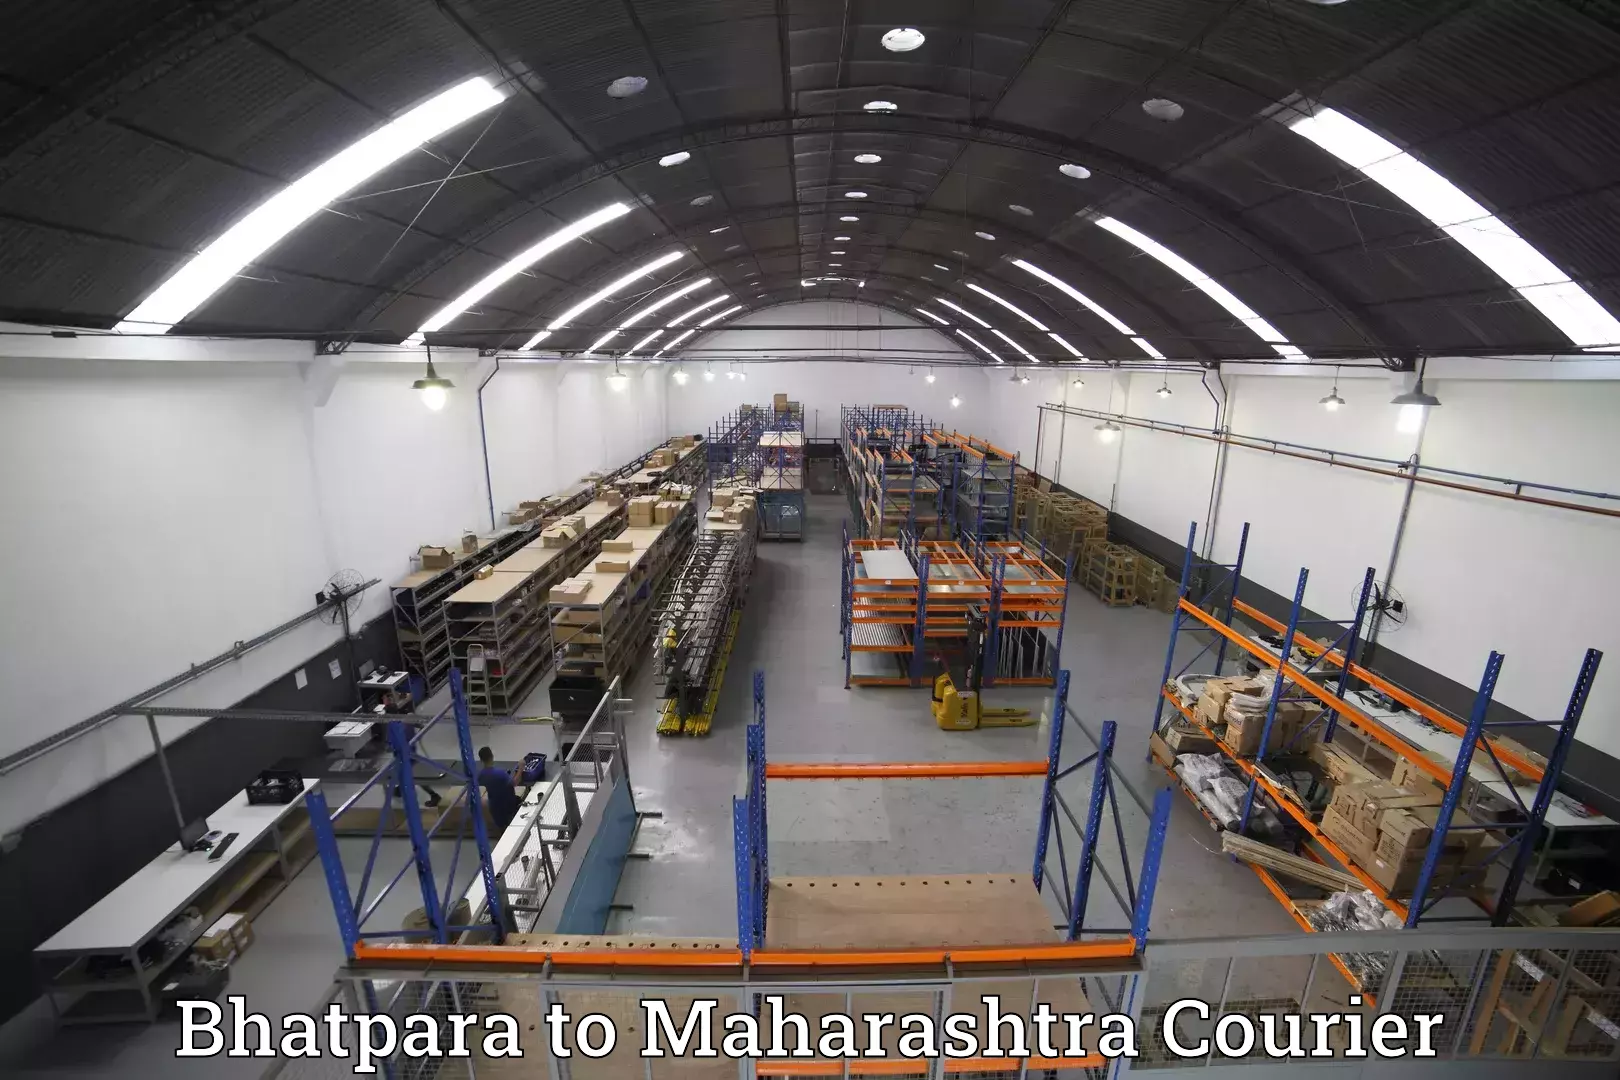 Luggage shipment tracking Bhatpara to Saphale